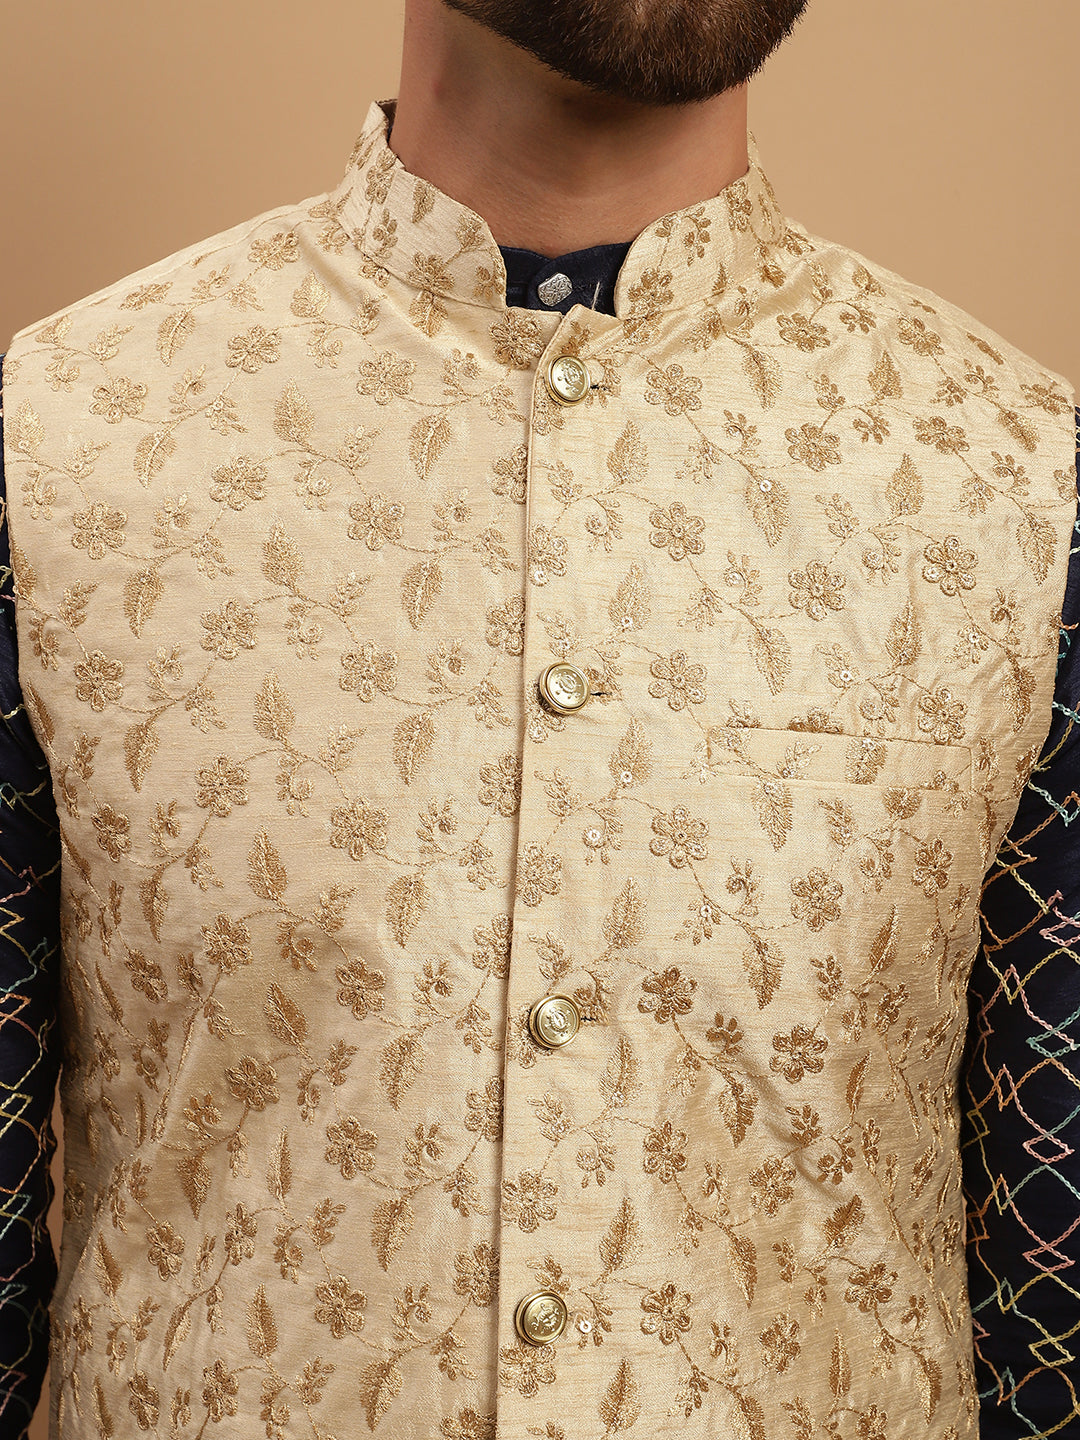 Men's Silk Blend Navy Blue Kurta and Cream Pyjama With Beige Nehru Jacket Set